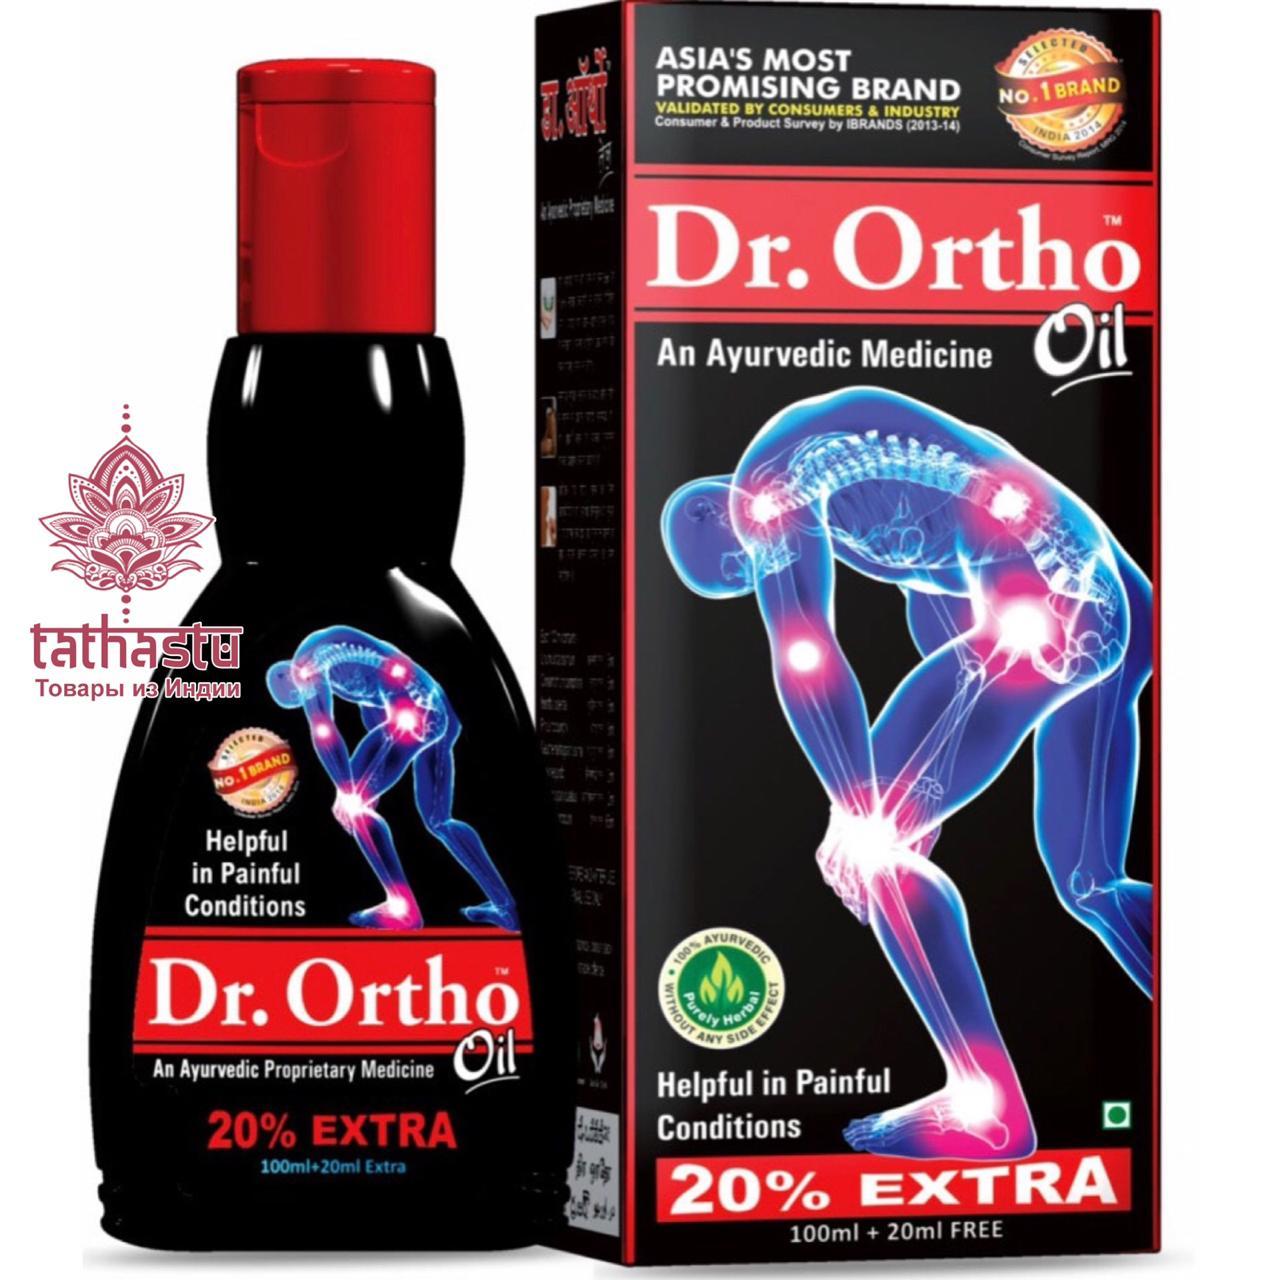 Dr. Ortho Аюрведическое лекарственное масло. Tathastu товары и индии